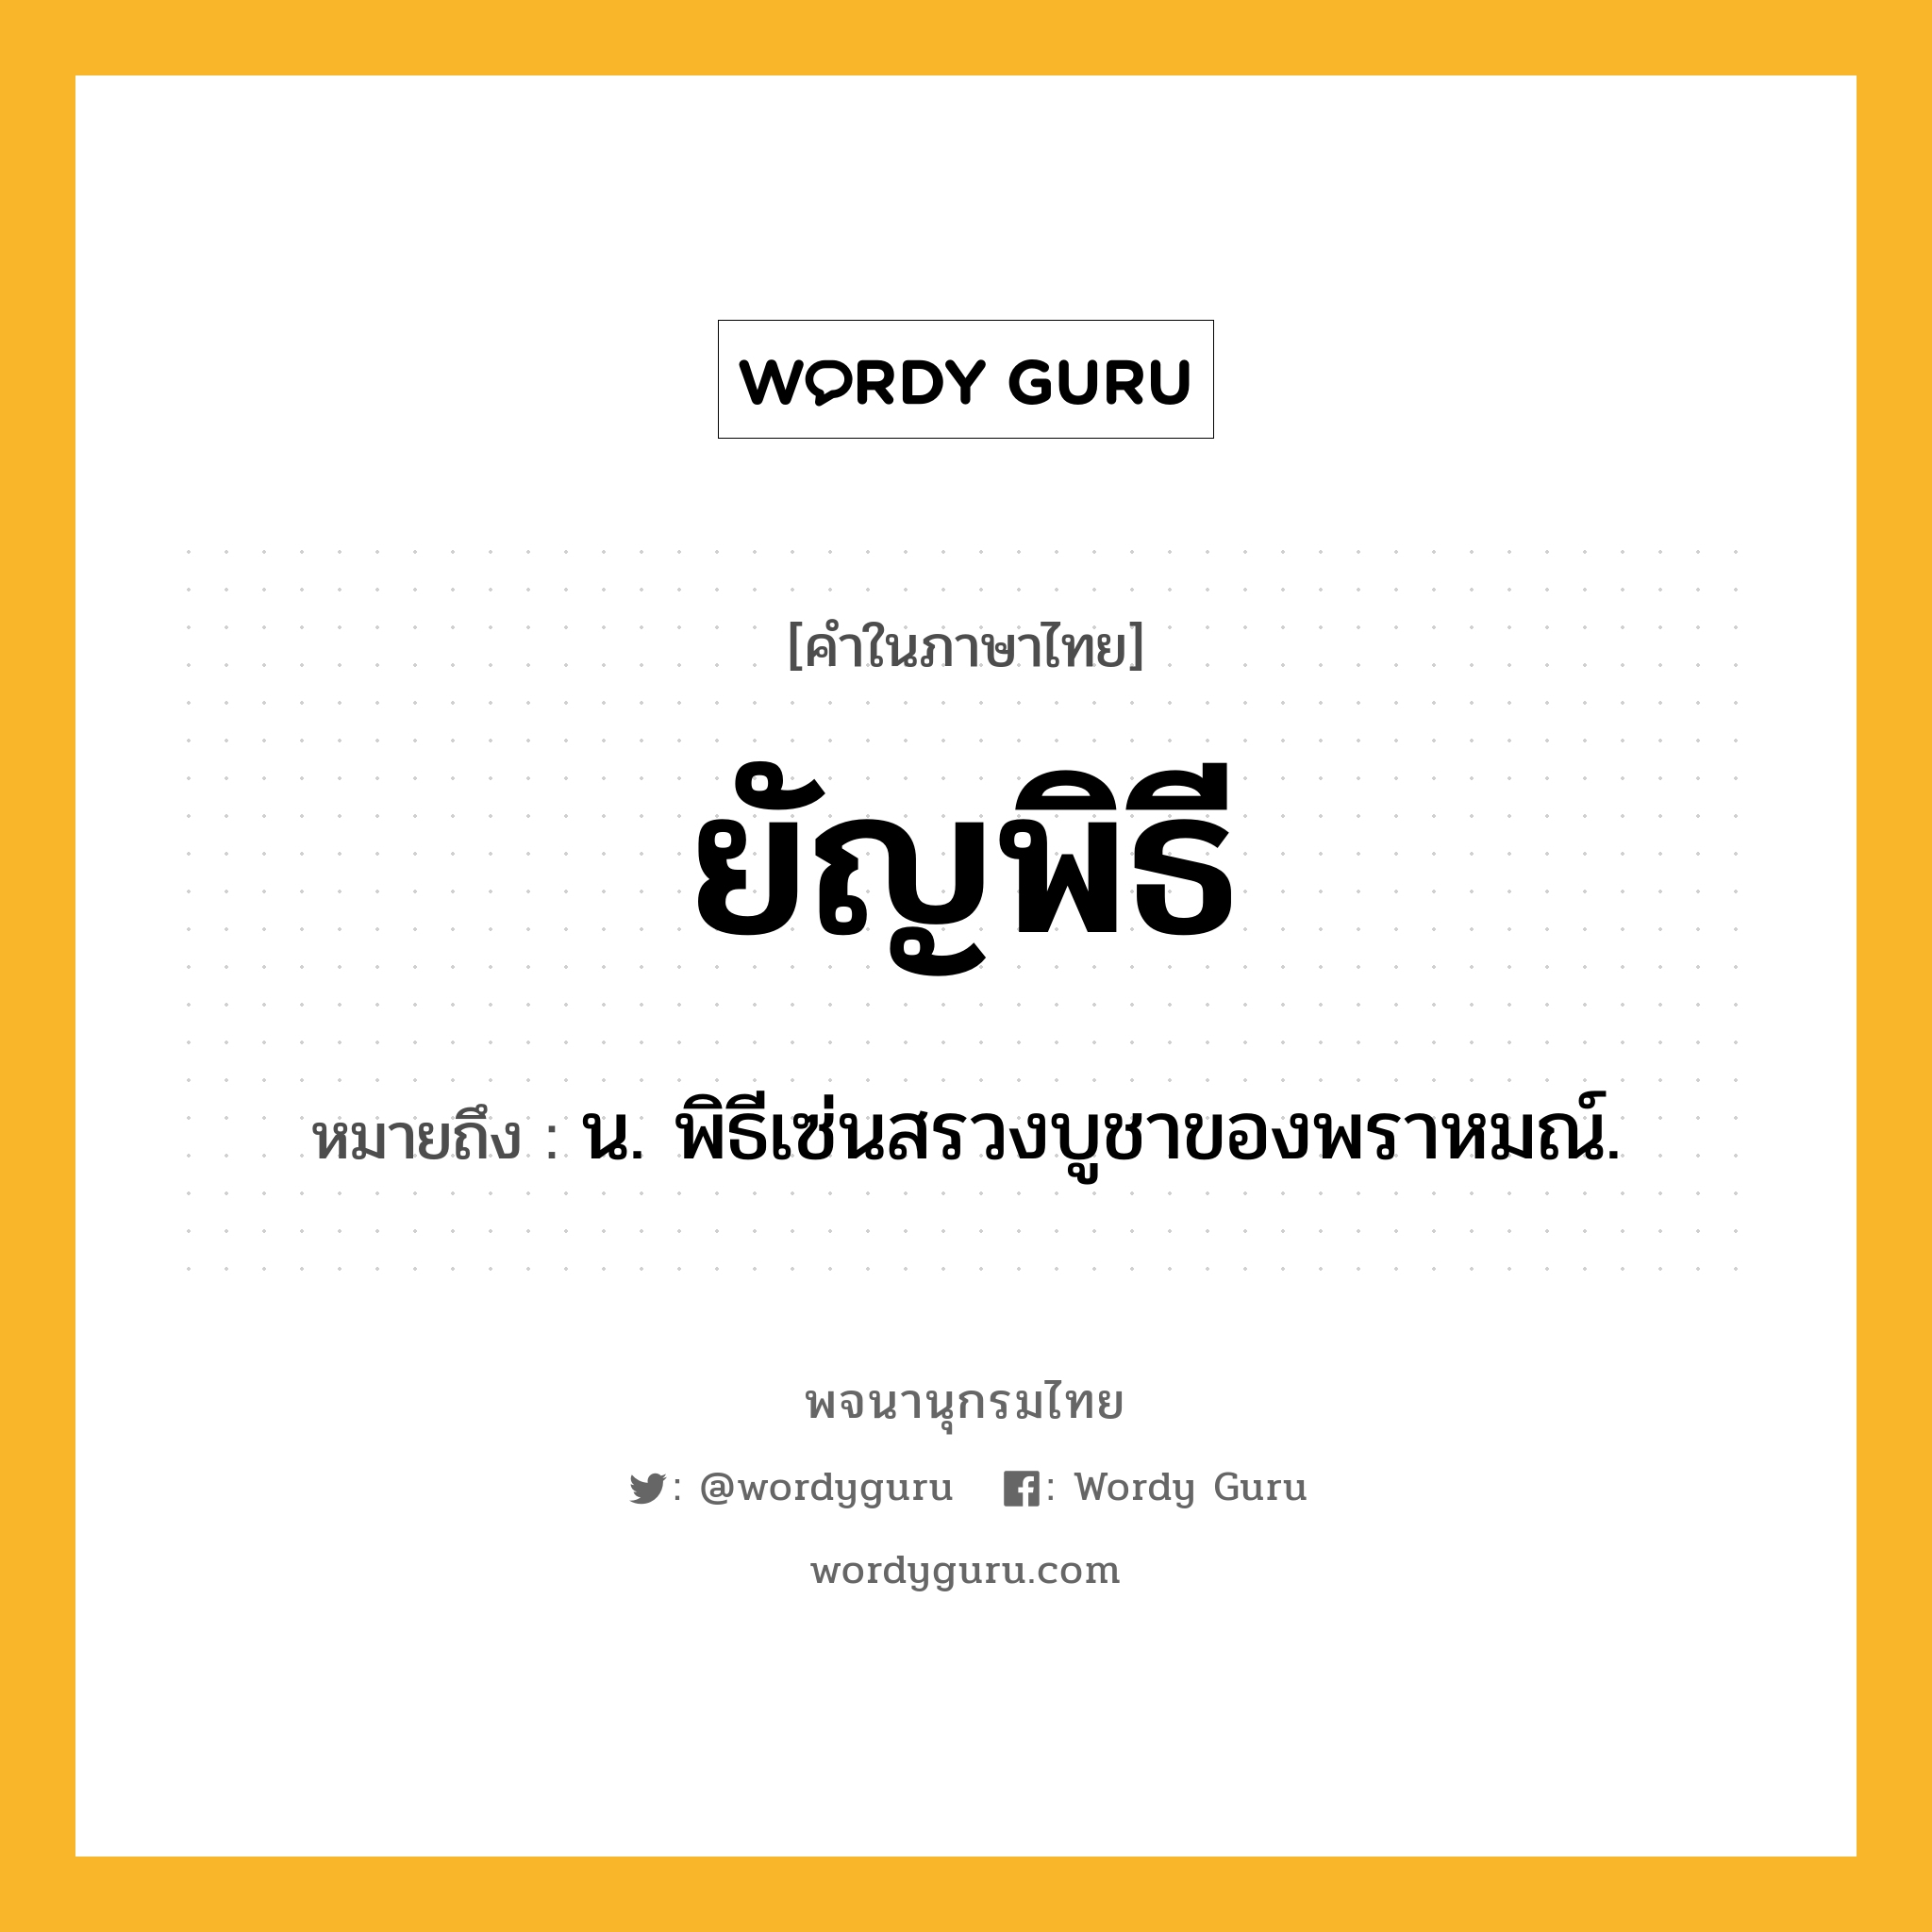 ยัญพิธี ความหมาย หมายถึงอะไร?, คำในภาษาไทย ยัญพิธี หมายถึง น. พิธีเซ่นสรวงบูชาของพราหมณ์.